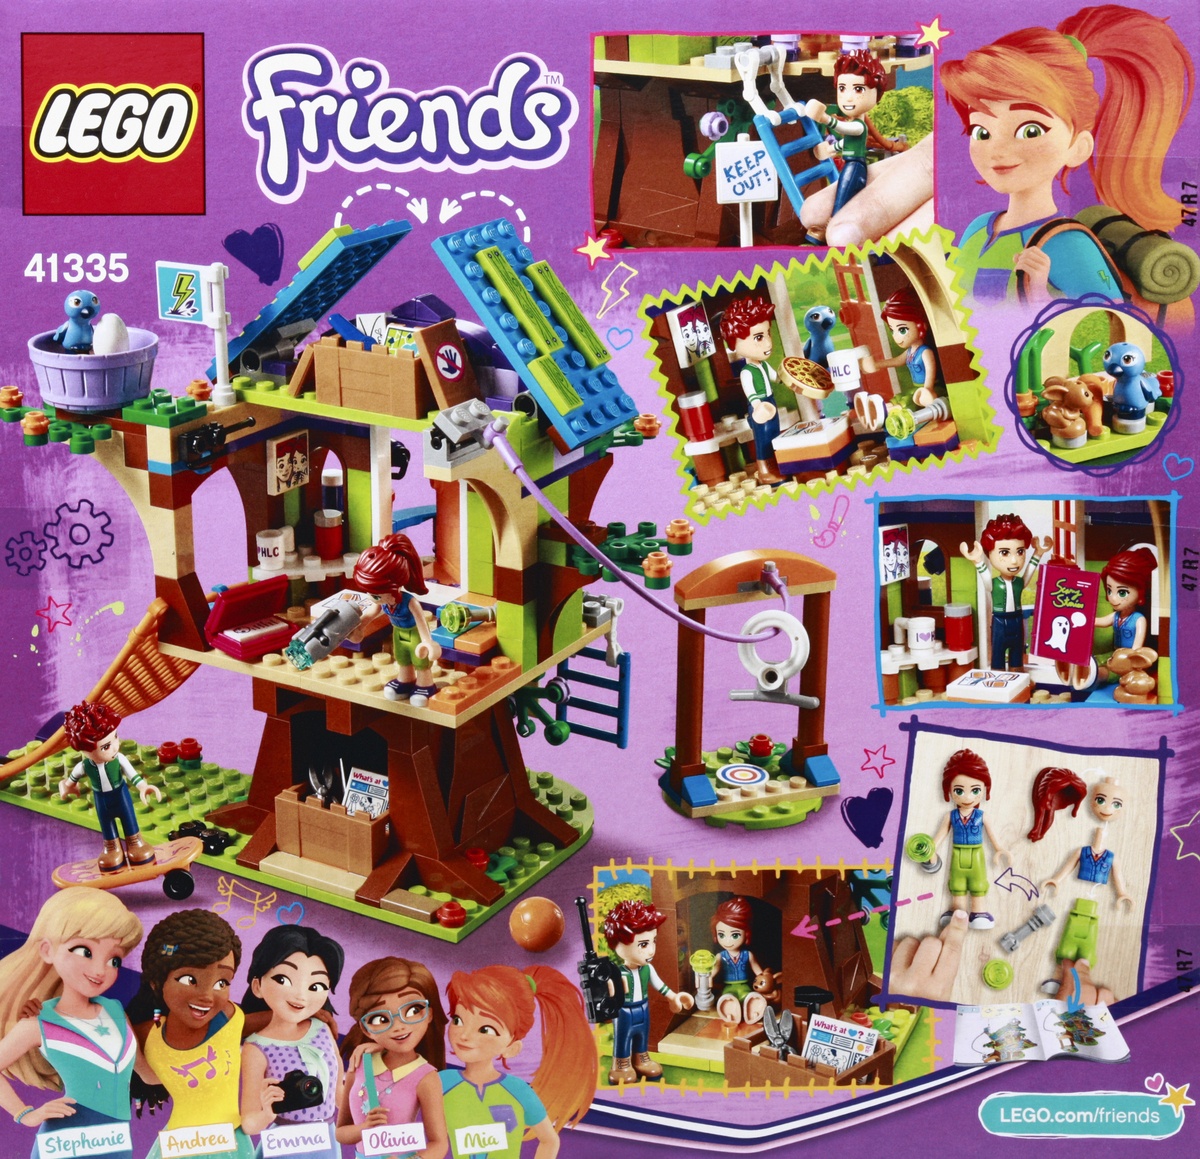 Lego Friends Mia S Tree House 41335 1 Ct Shipt